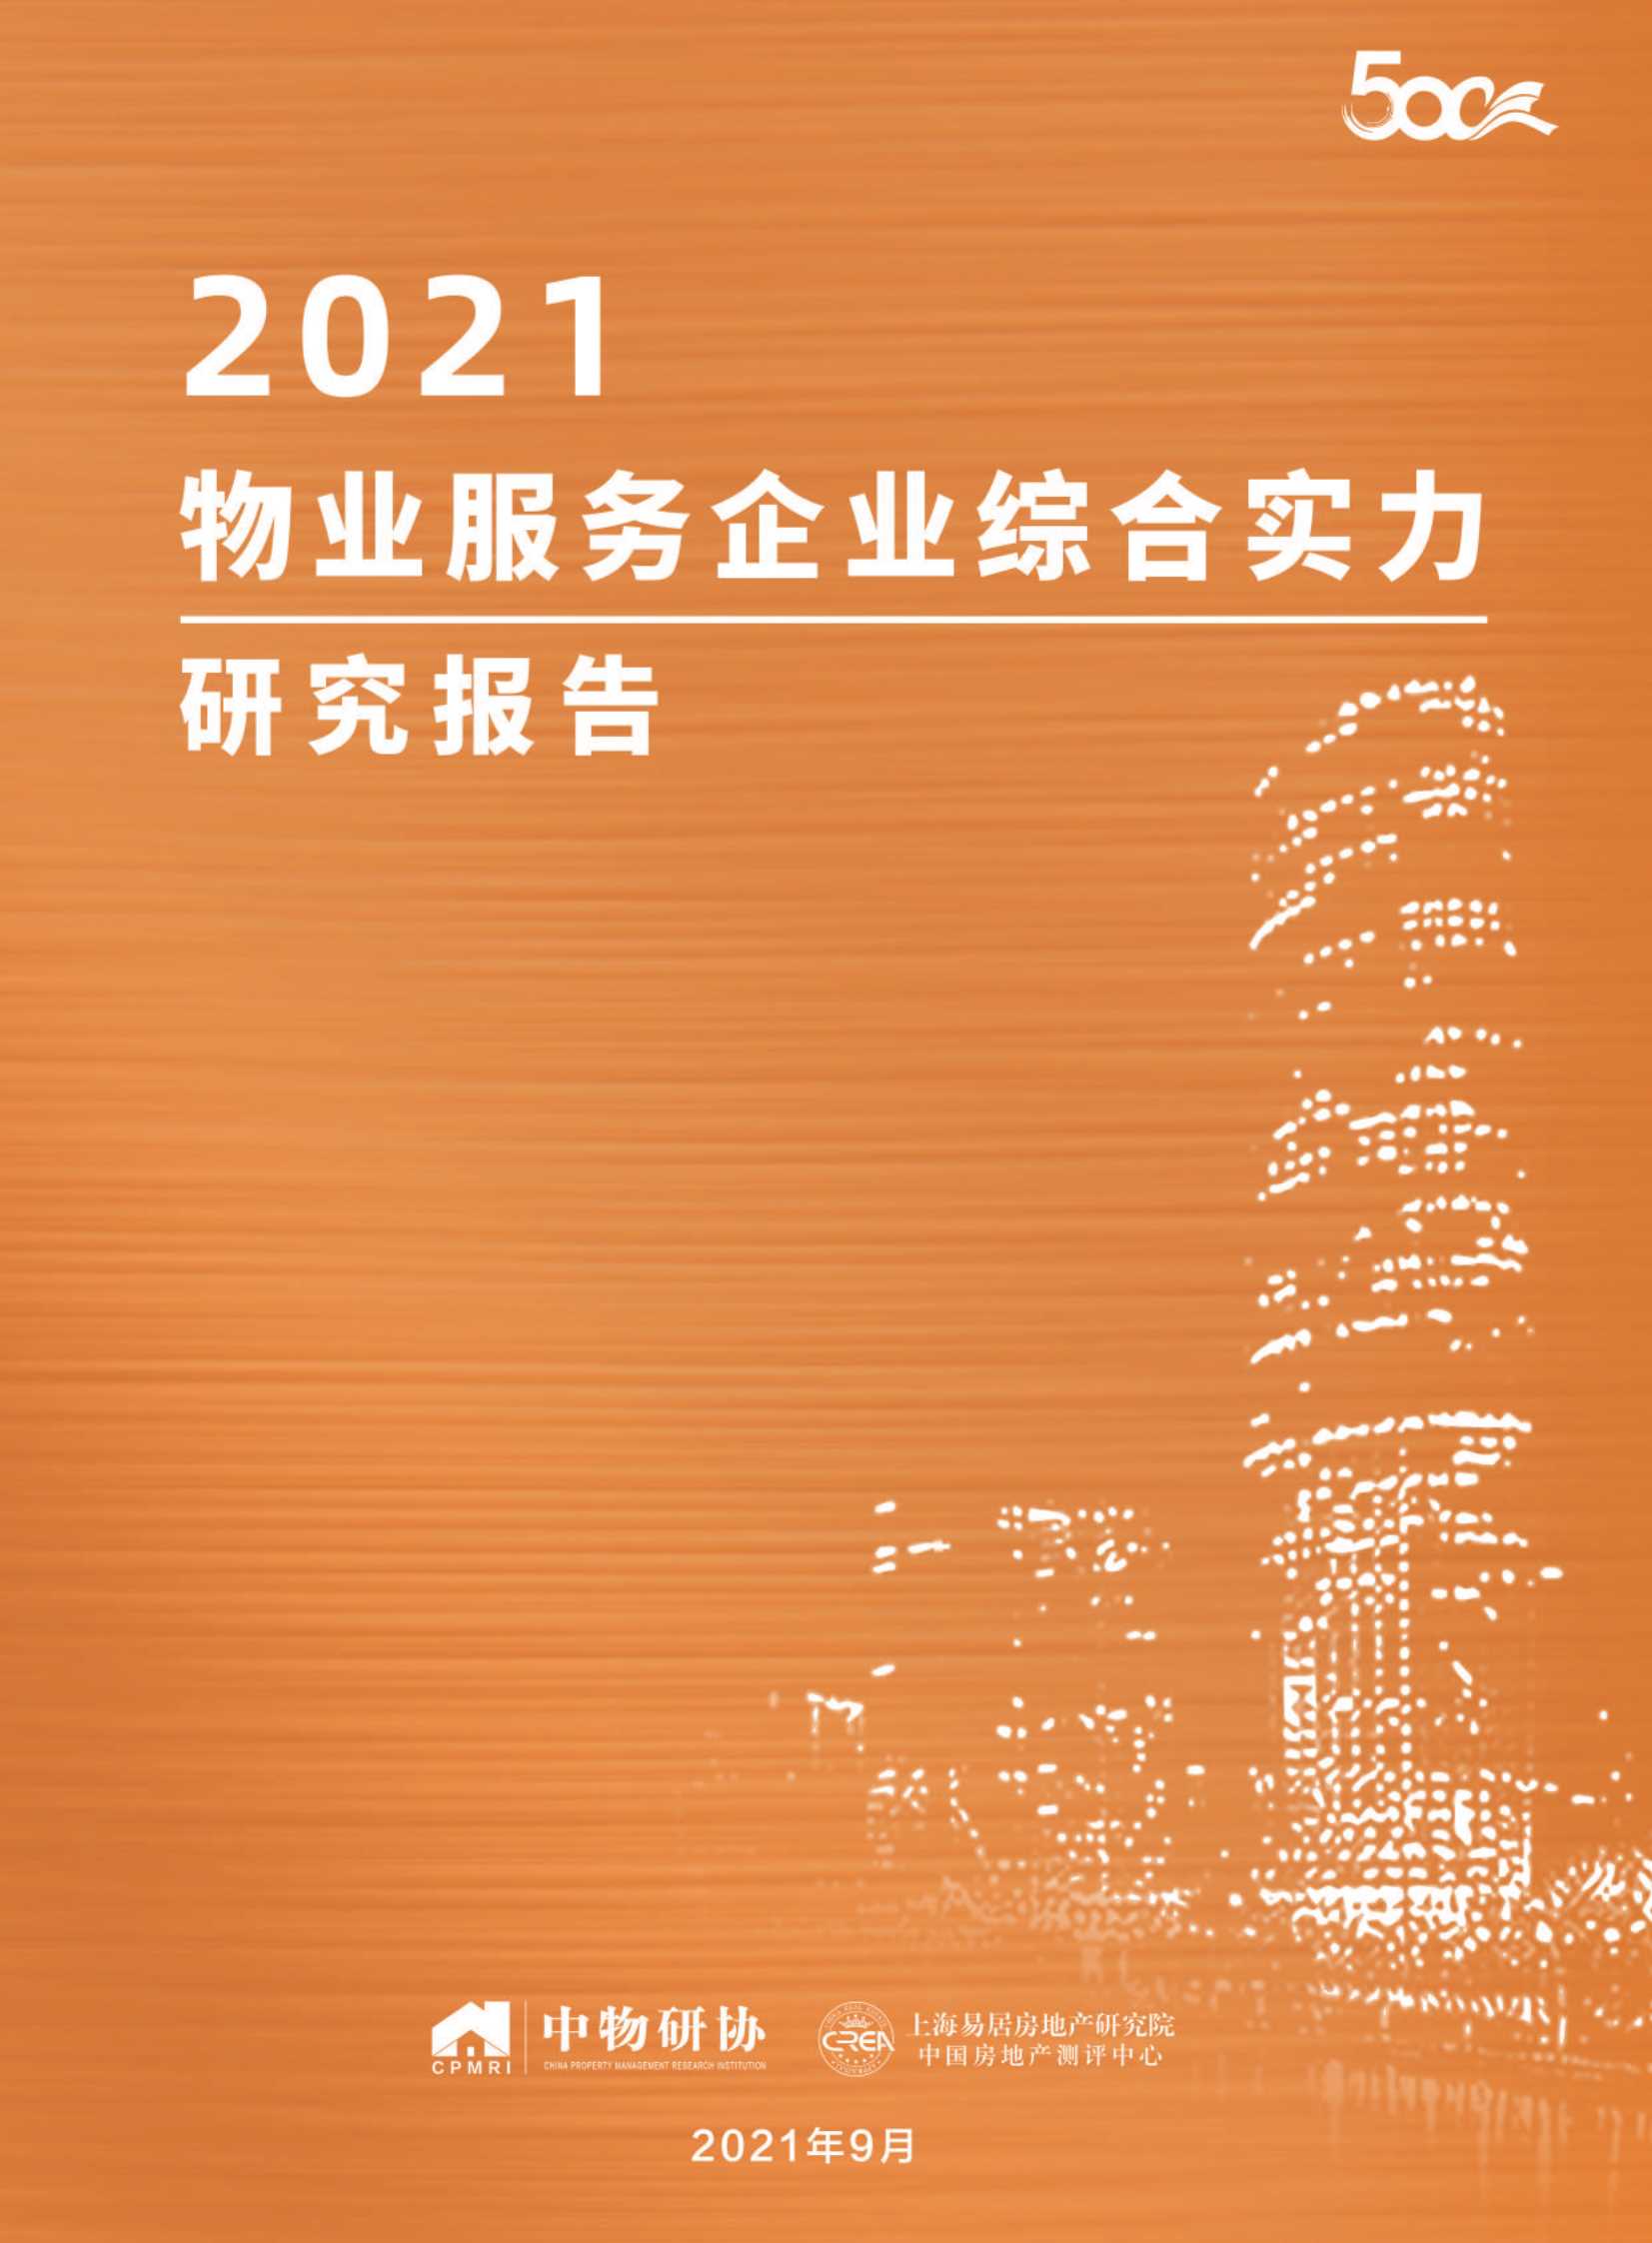 2021物业服务企业综合实力研究报告-2021.10-60页